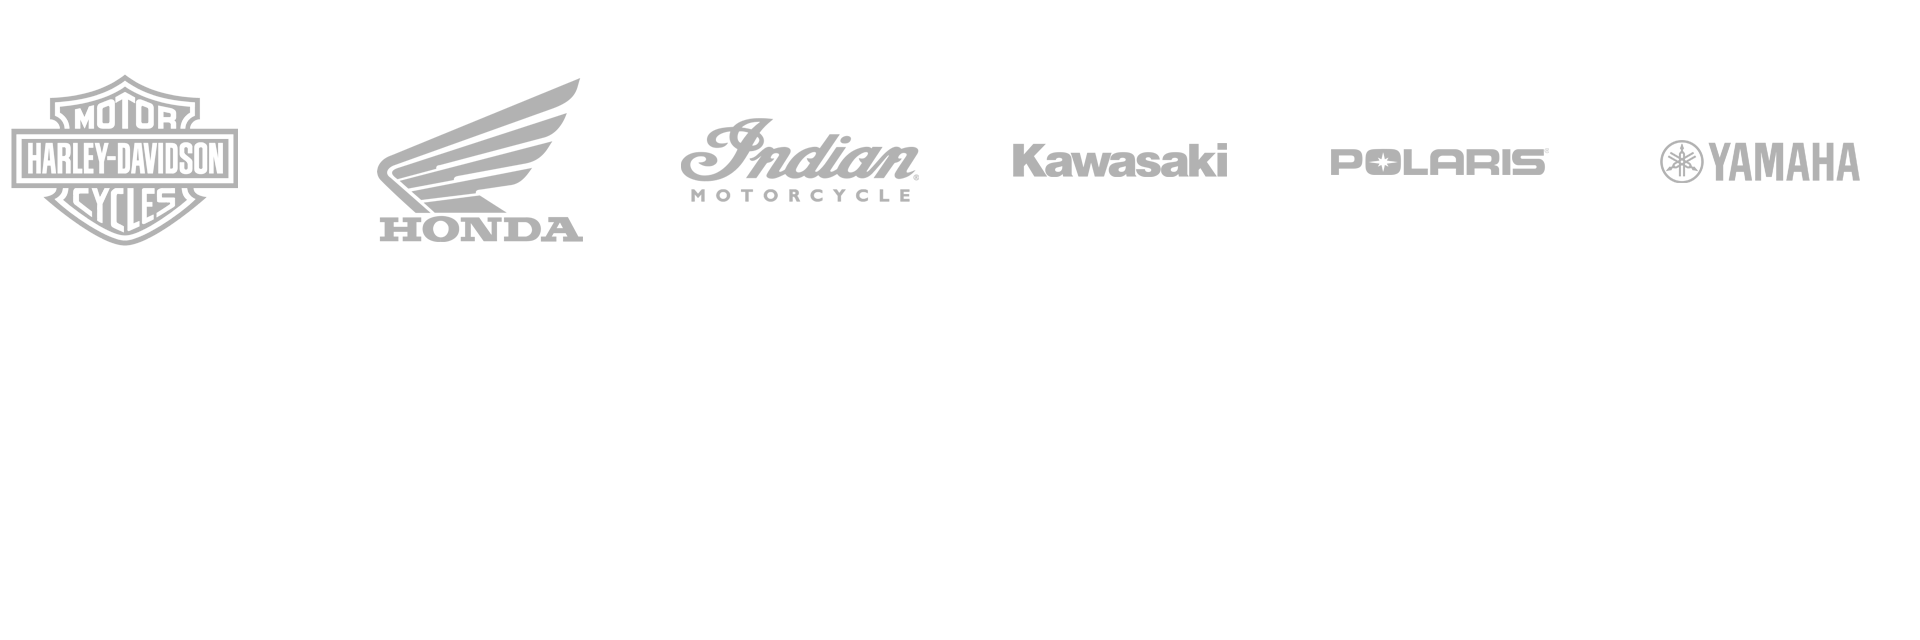 Logos of Harley-Davidson, Honda, Indian Motorcycle, Kawasaki, Polaris, and Yamaha